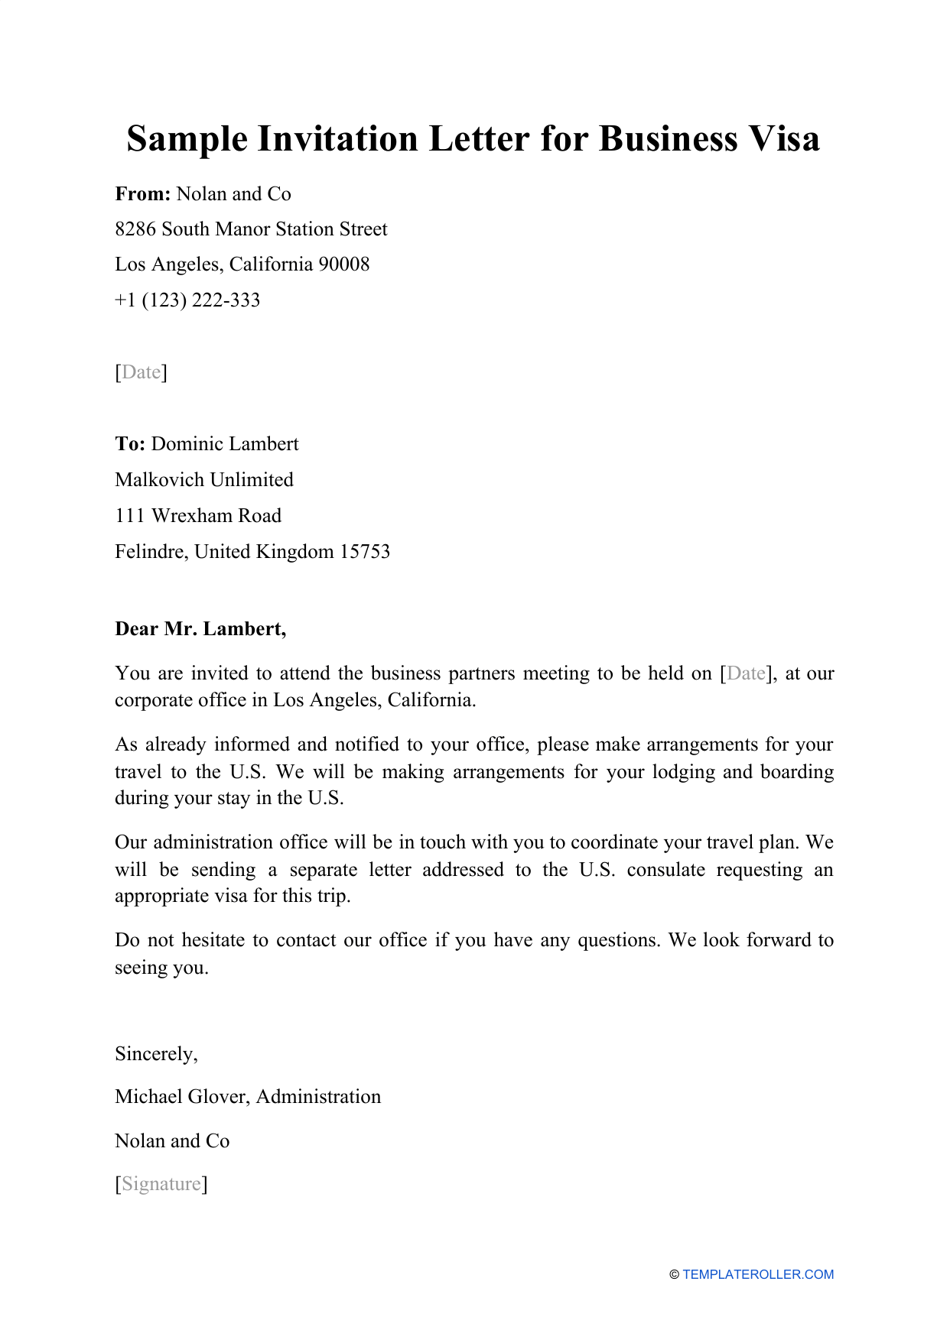 Sample Invitation Letter for Business Visa Download Printable PDF